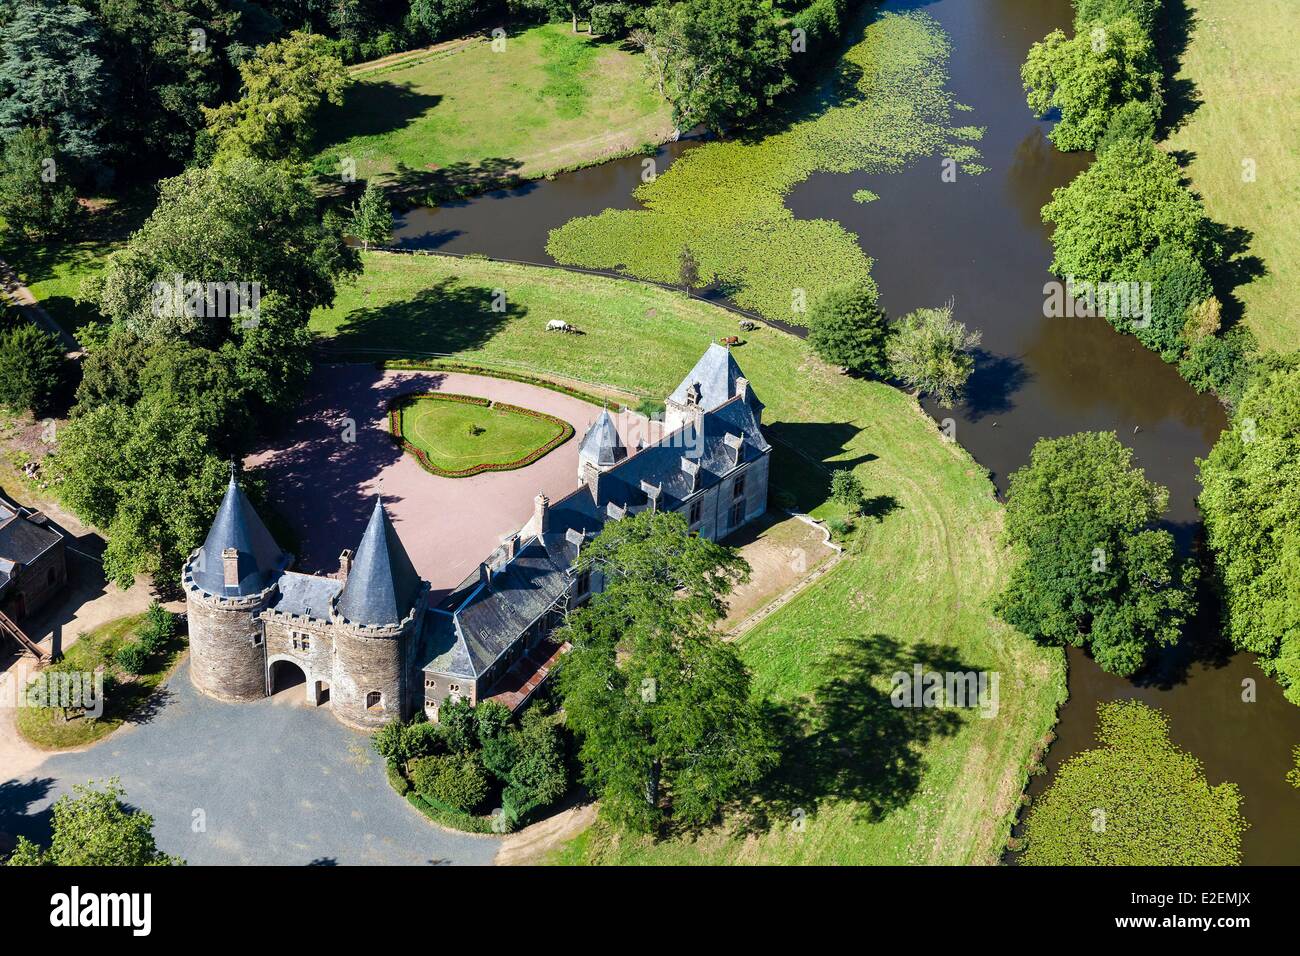 France, Maine et Loire, Geste, Chateau Le Plessis (aerial view) Stock Photo